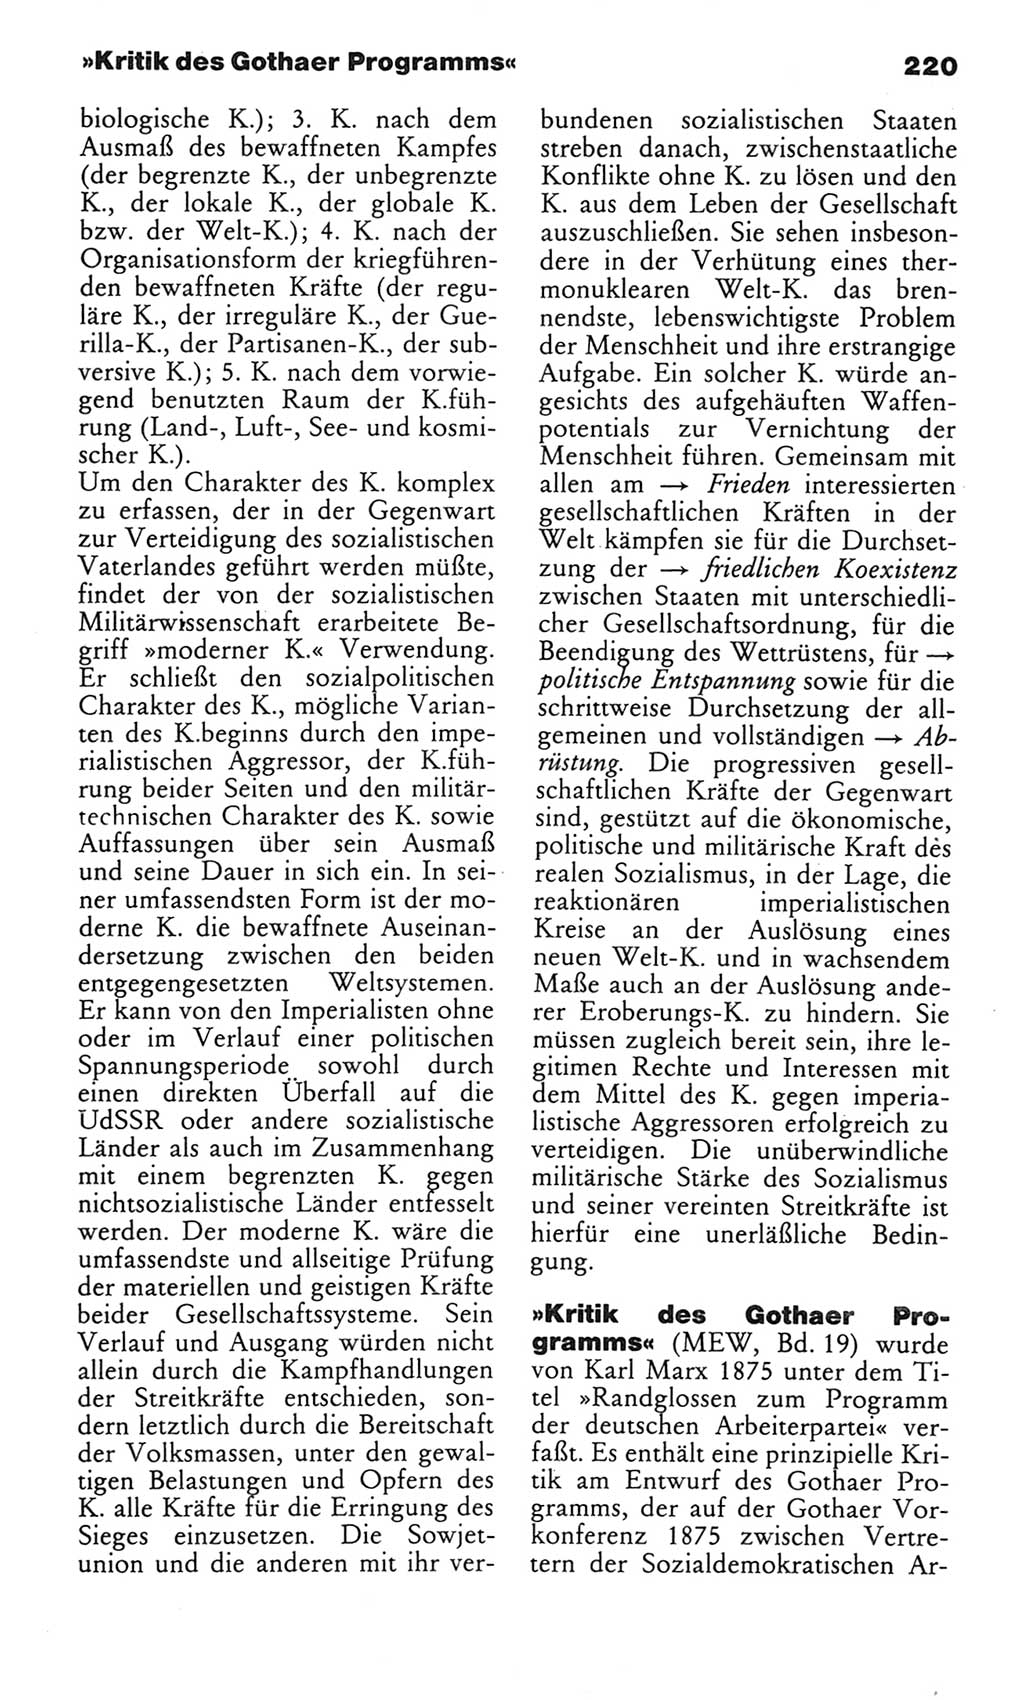 Wörterbuch des wissenschaftlichen Kommunismus [Deutsche Demokratische Republik (DDR)] 1982, Seite 220 (Wb. wiss. Komm. DDR 1982, S. 220)